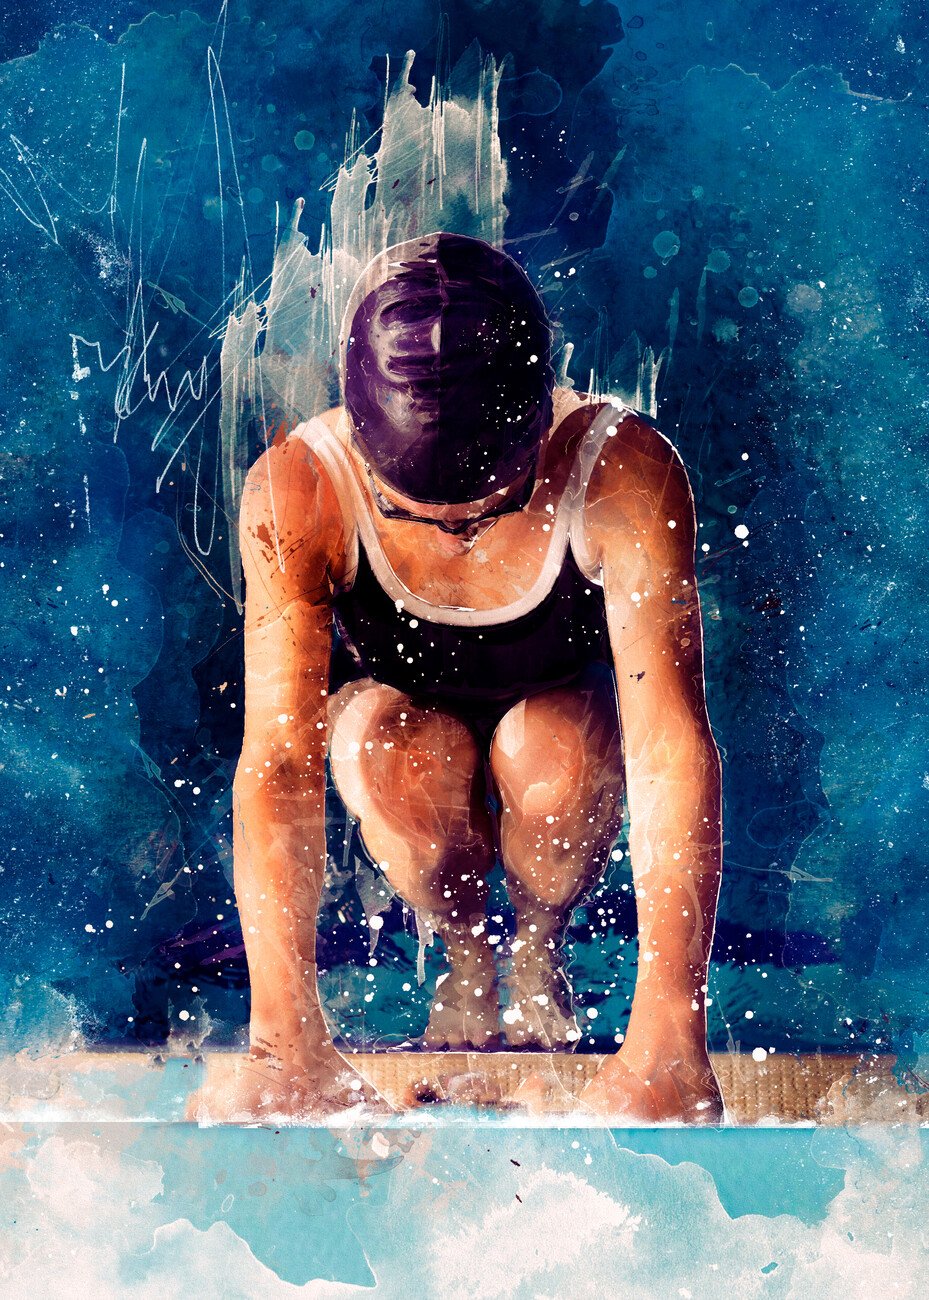 Justyna Jaszke Umělecký tisk Swimmer Sport Art 1, Justyna Jaszke, (30 x 40 cm)